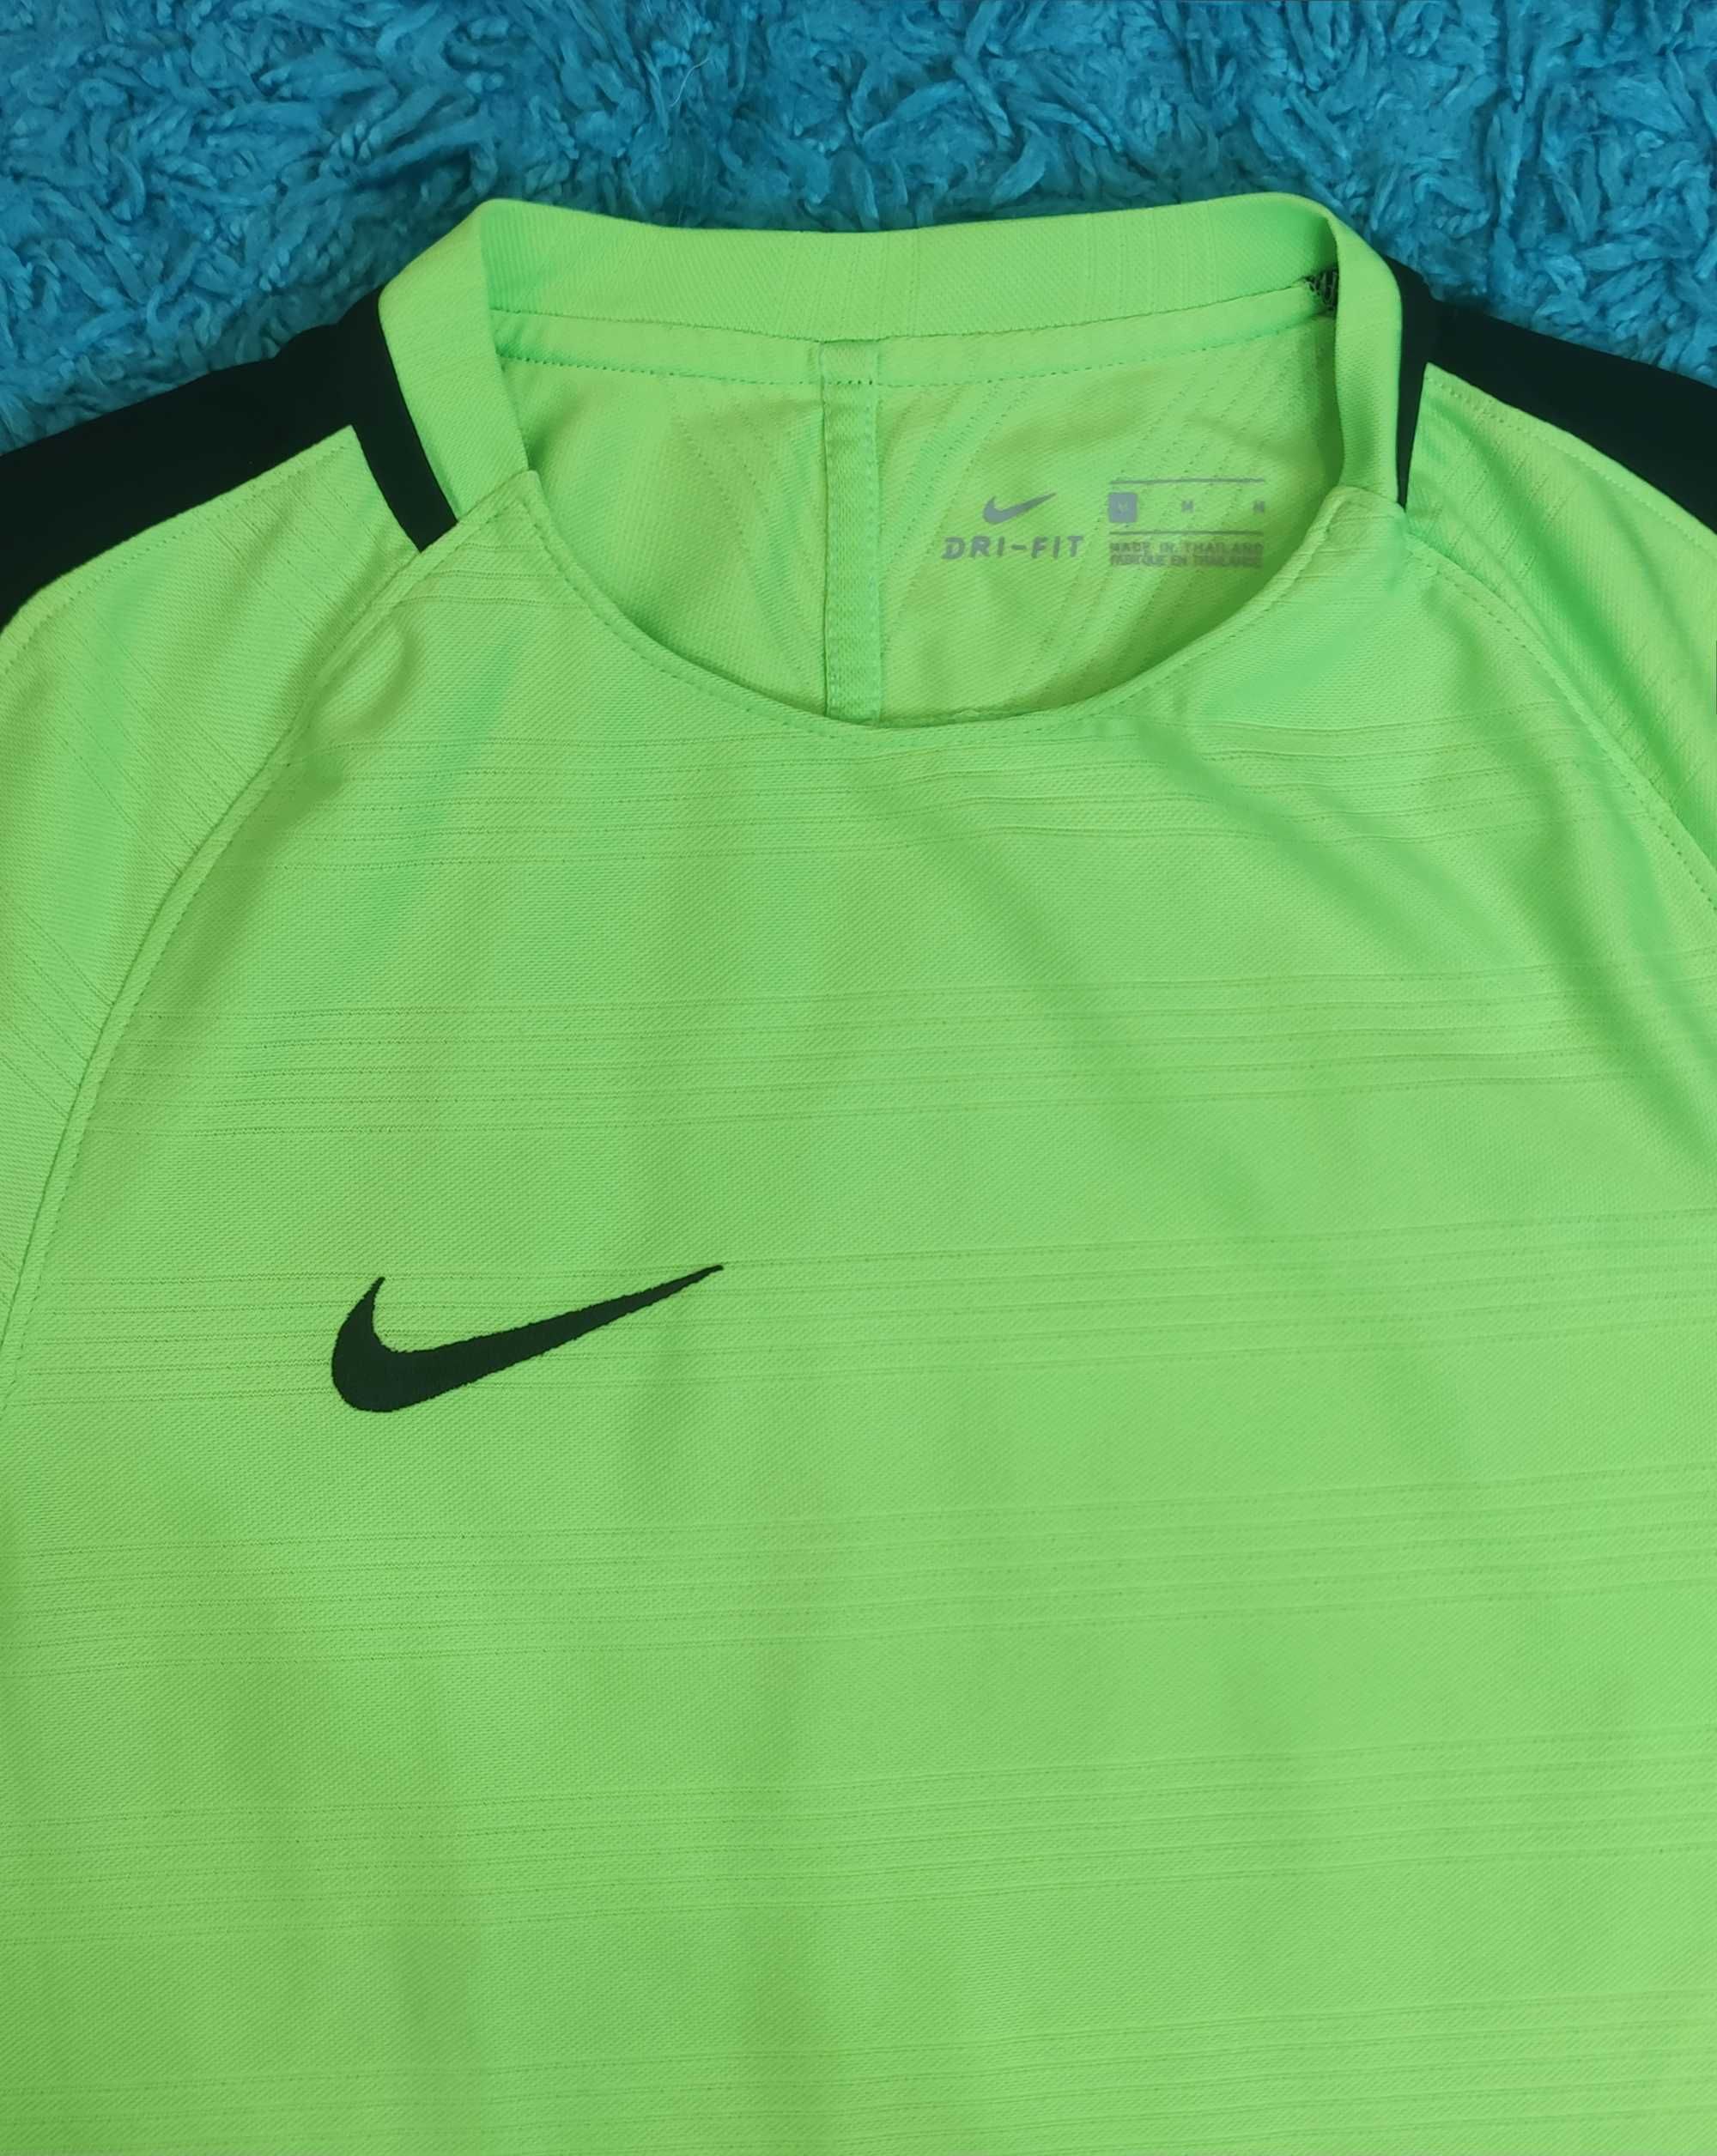 Tricou Nike Dri-Fit Original - Neon